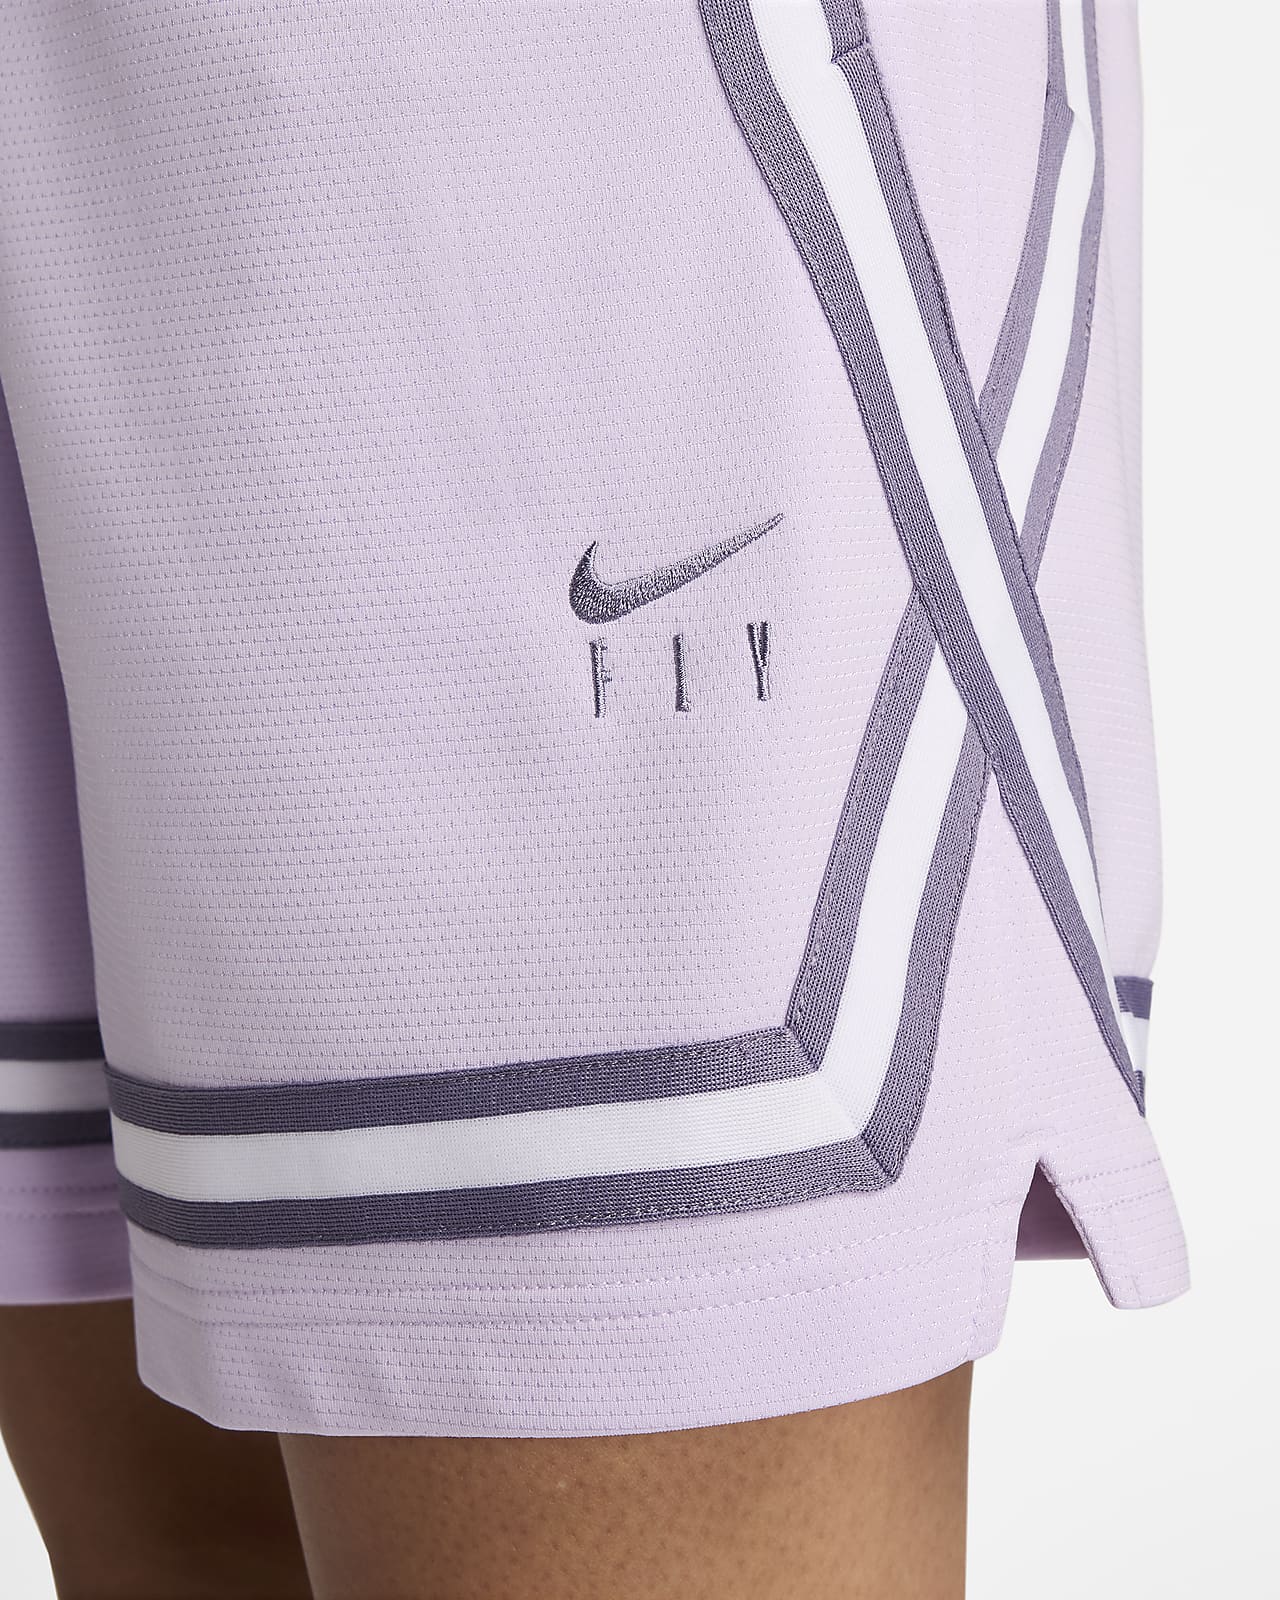 Nike Swoosh Fly, a coleção de roupas de basquete feita para